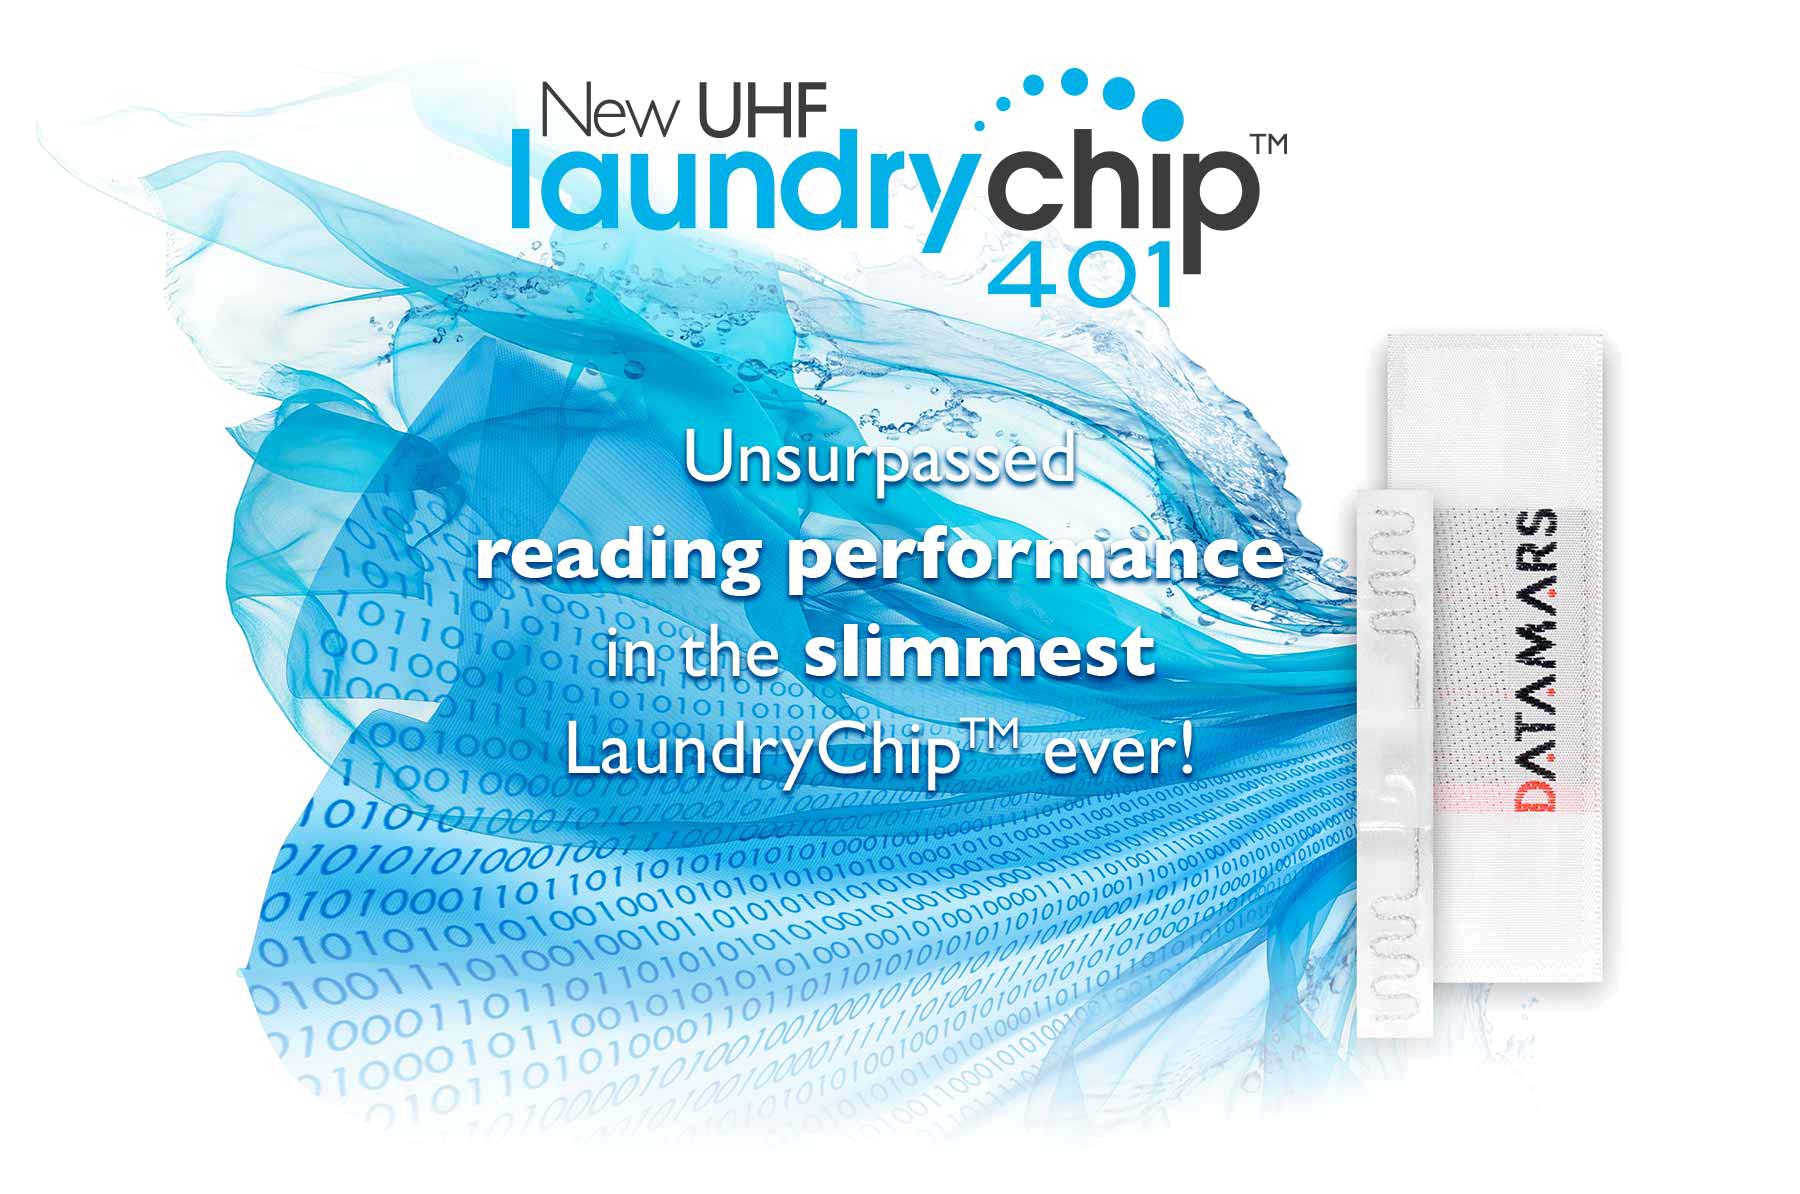 datamars uhf 401 laundry chip visual 2